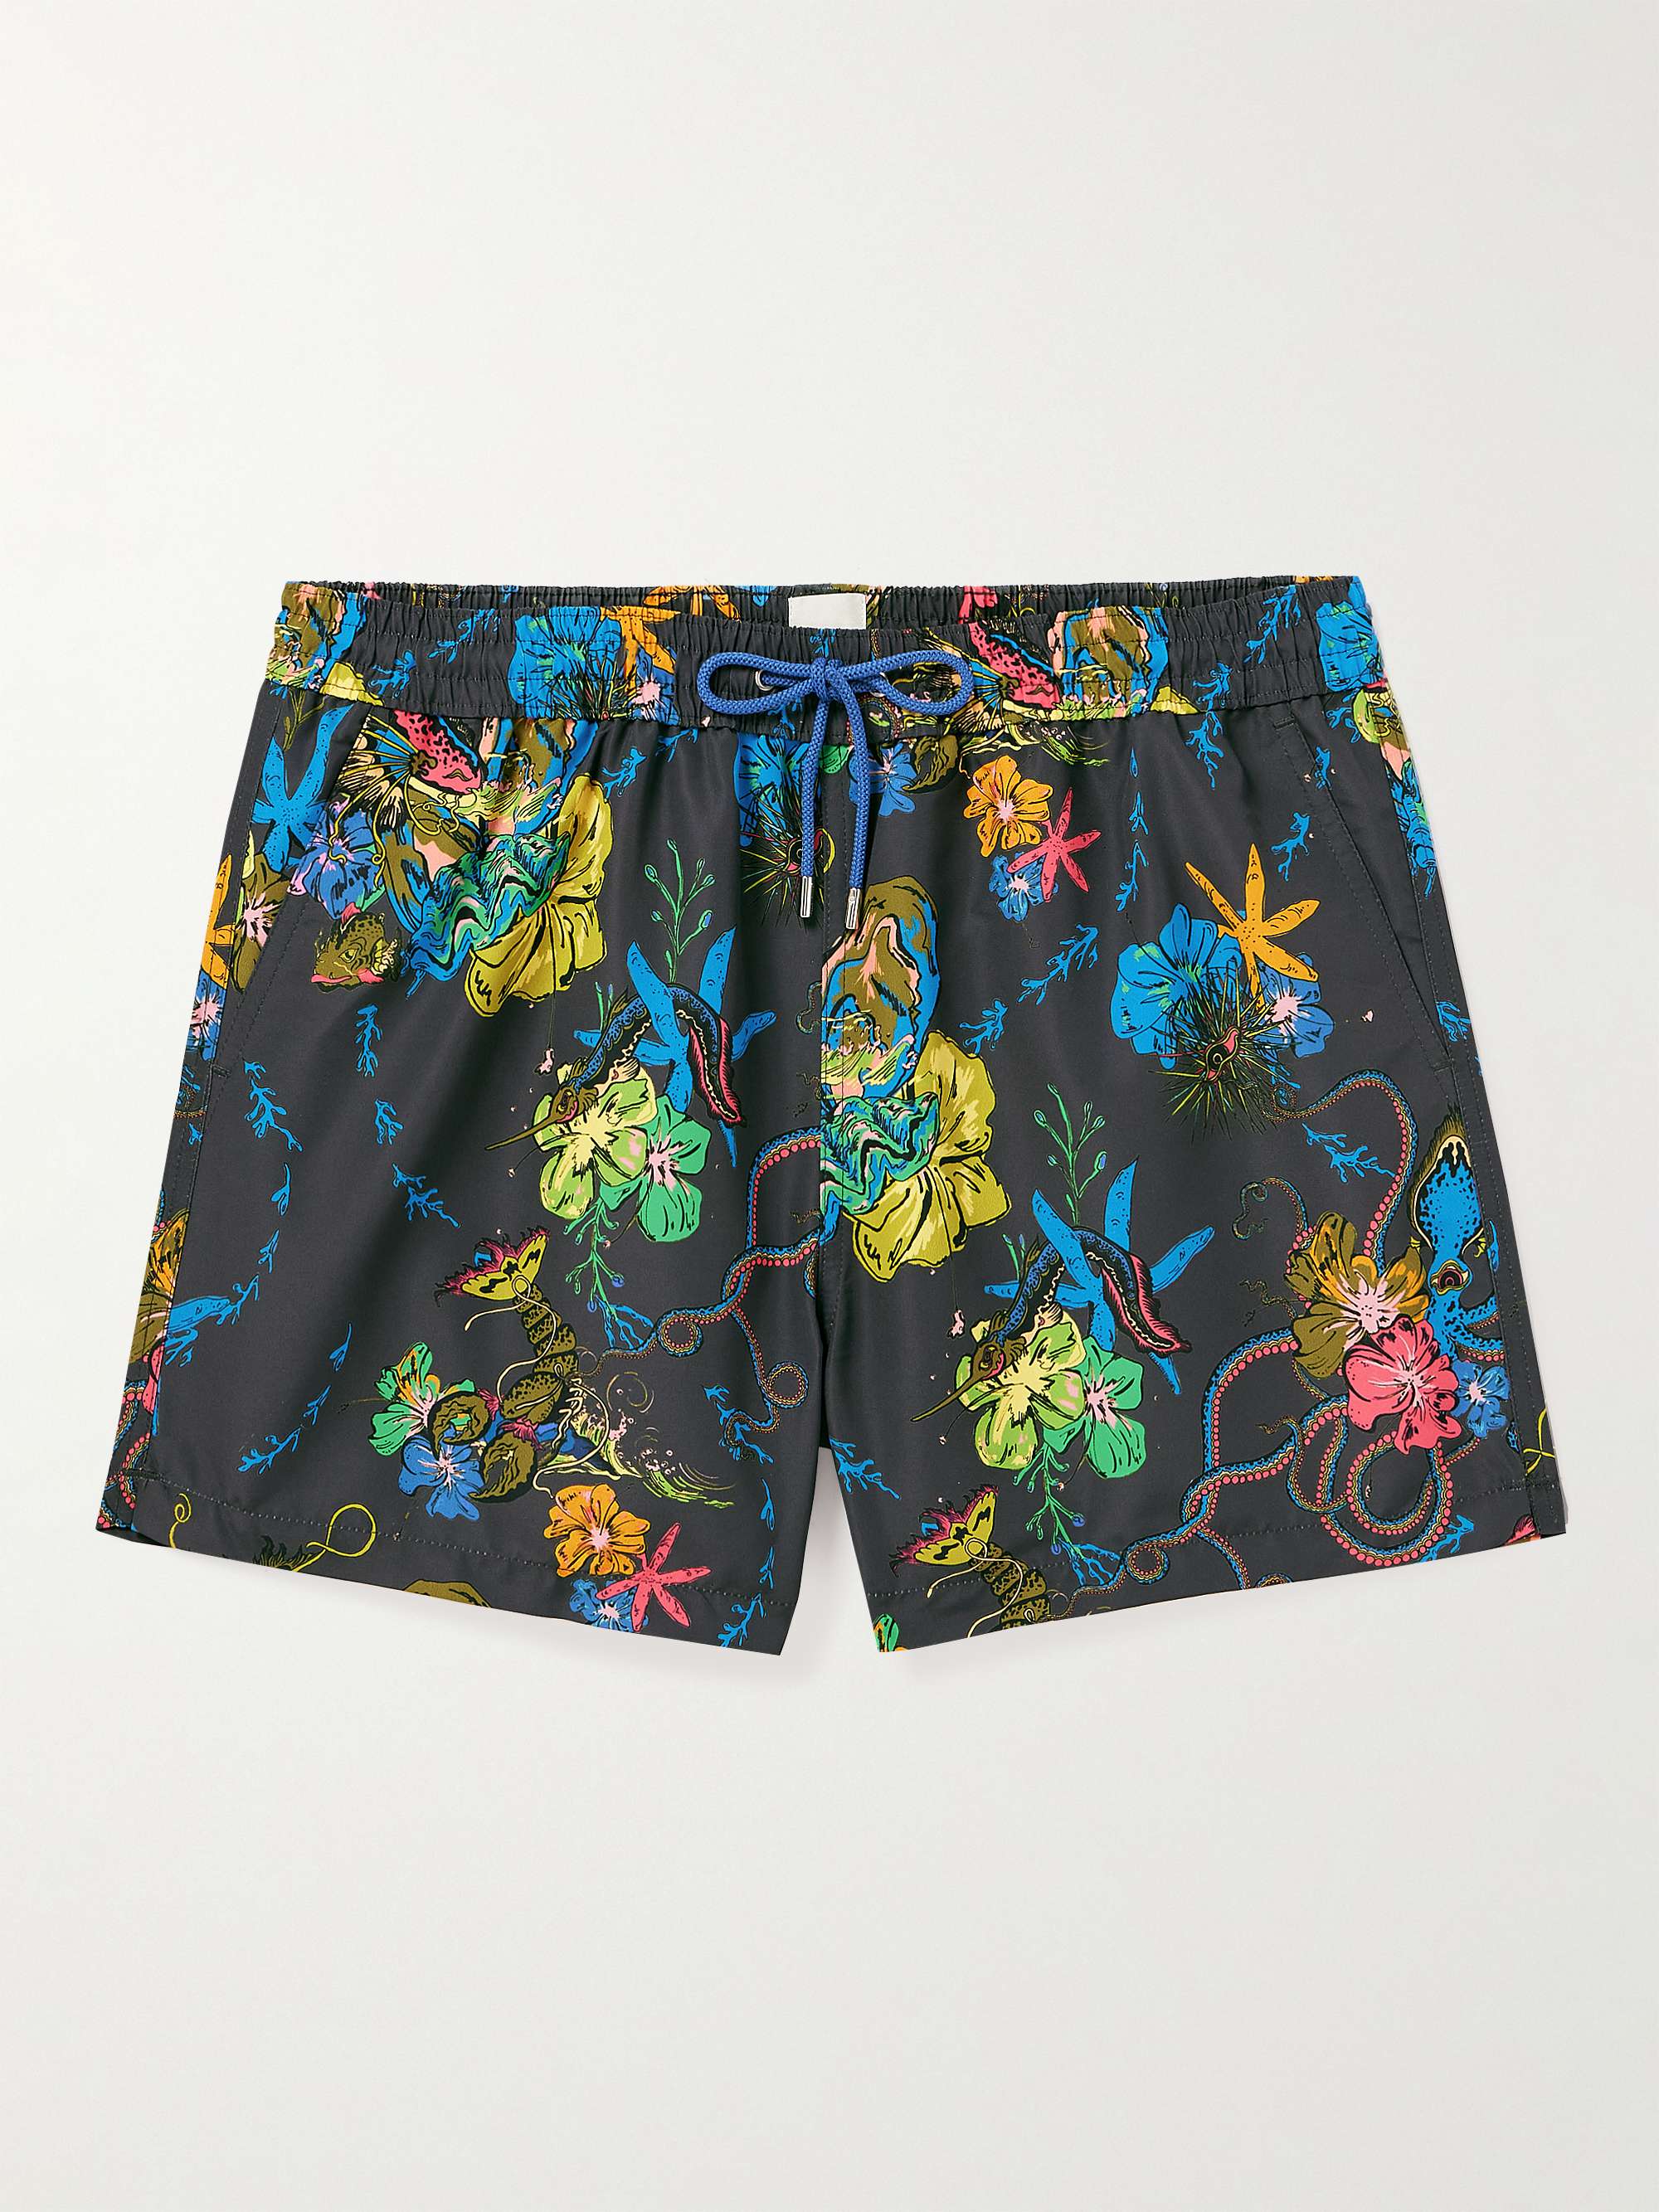 PAUL SMITH Kraken Slim-Fit Short-Length Printed Recycled Swim Shorts for  Men | MR PORTER